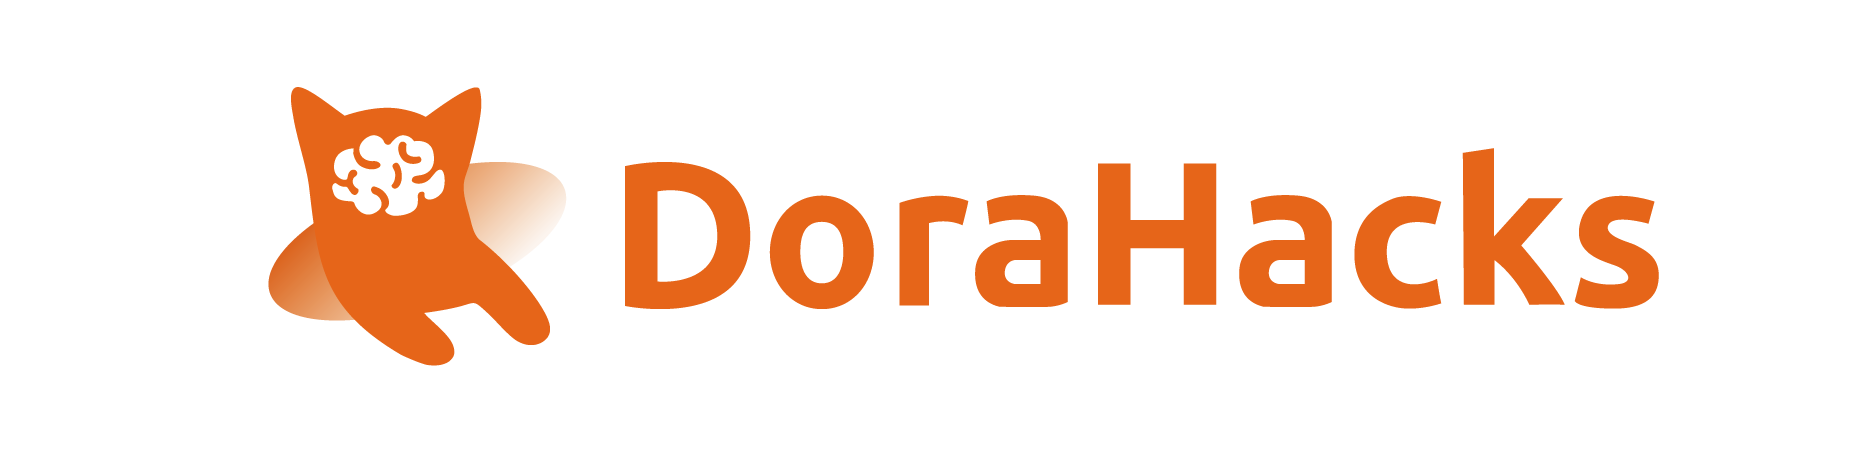 Dora Logo